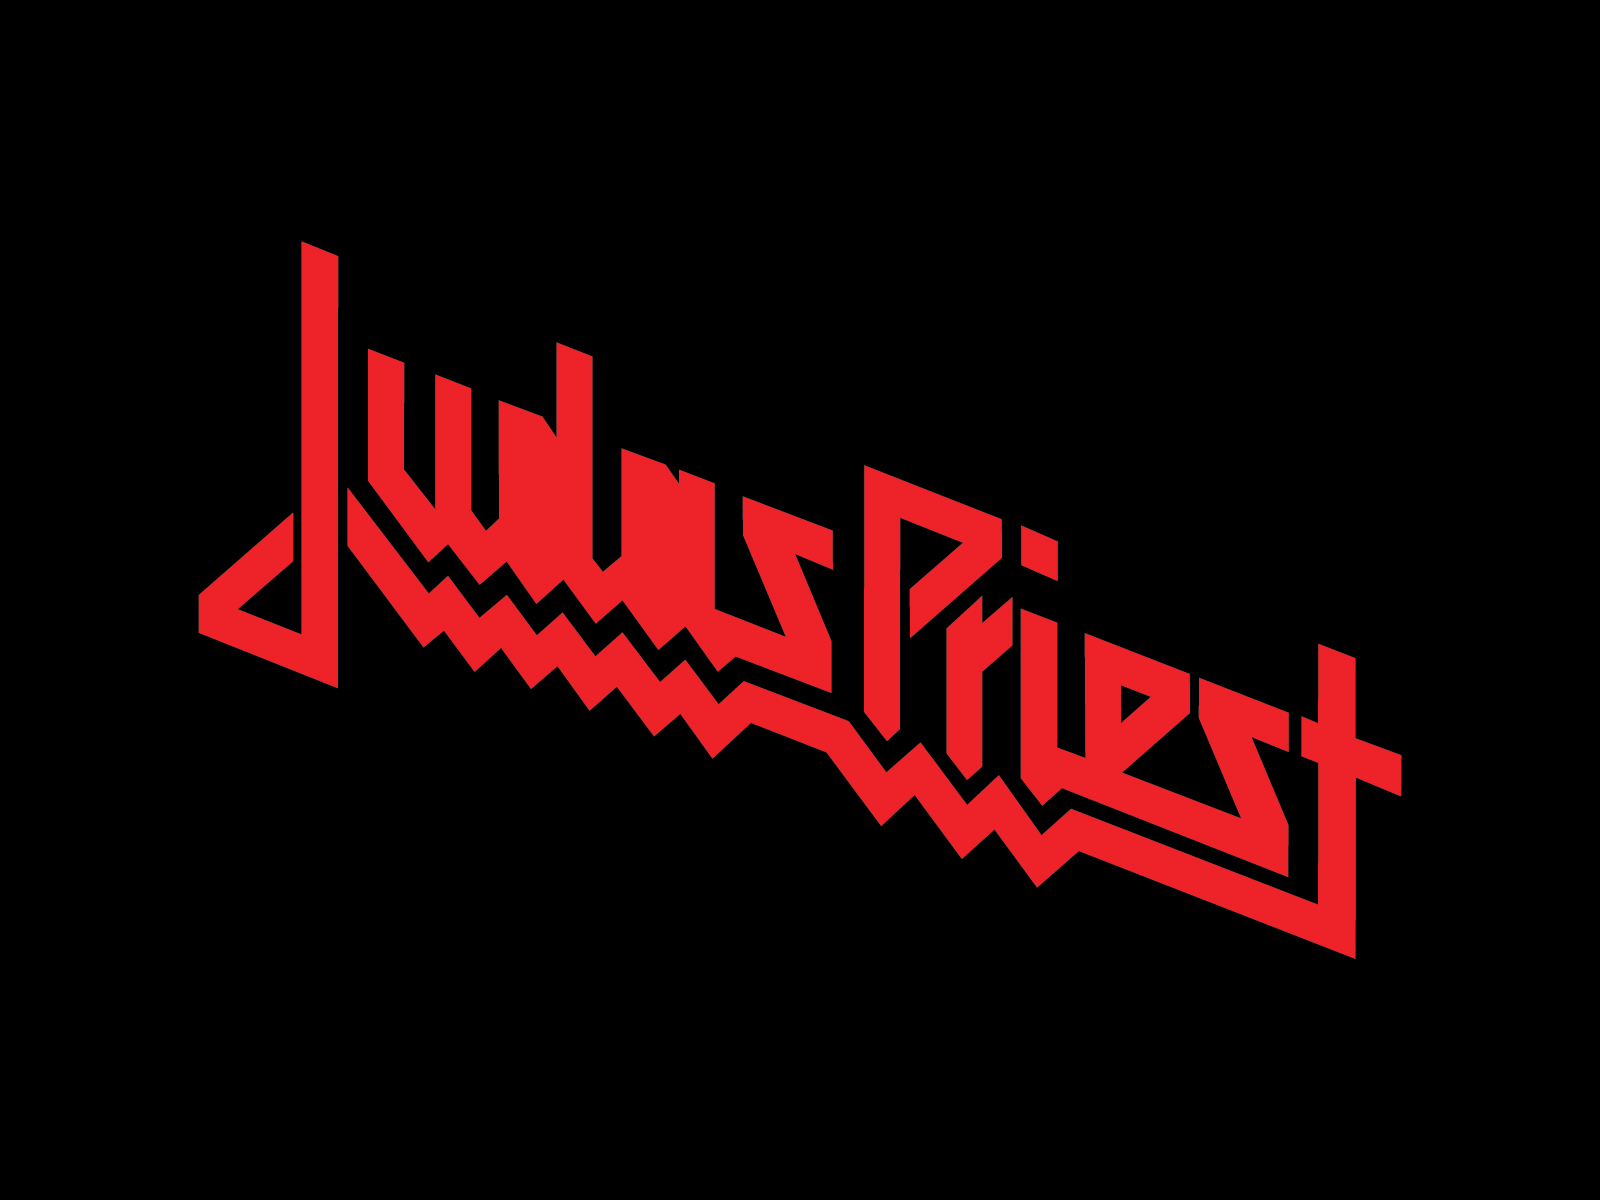 Judas Priest band logo wallpaper | Band logos - Rock band logos ...